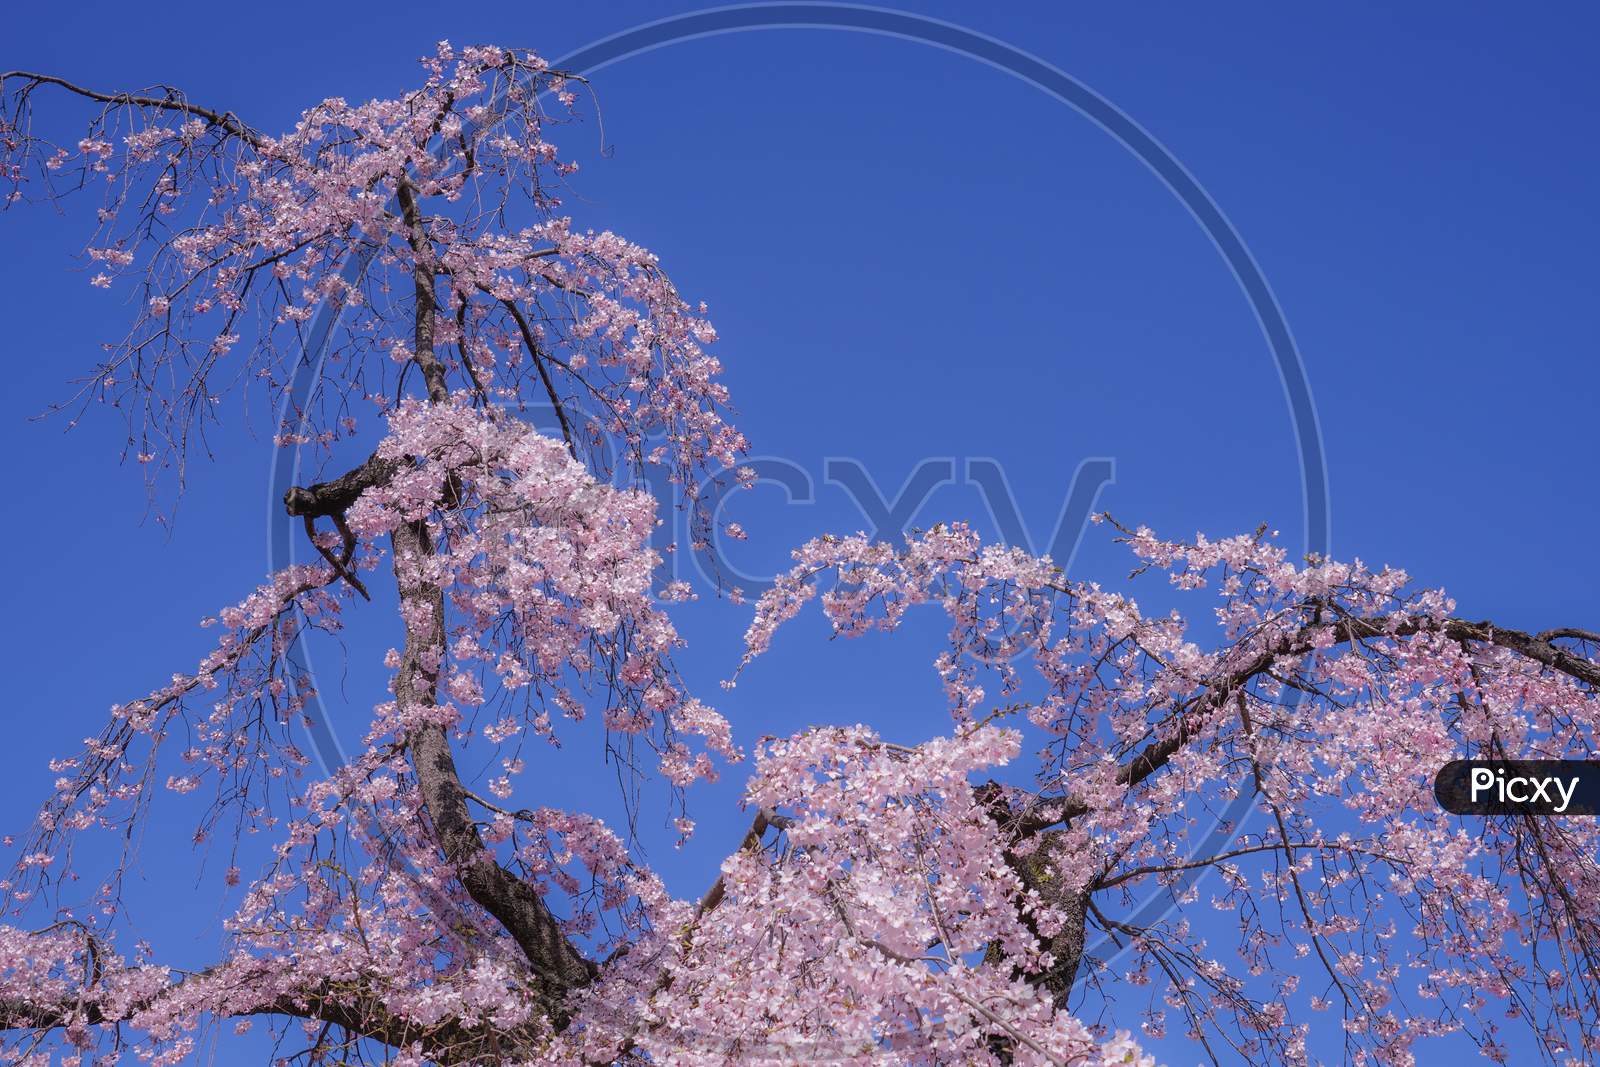 Koishikawa Korakuen Weeping Cherry Tree Of